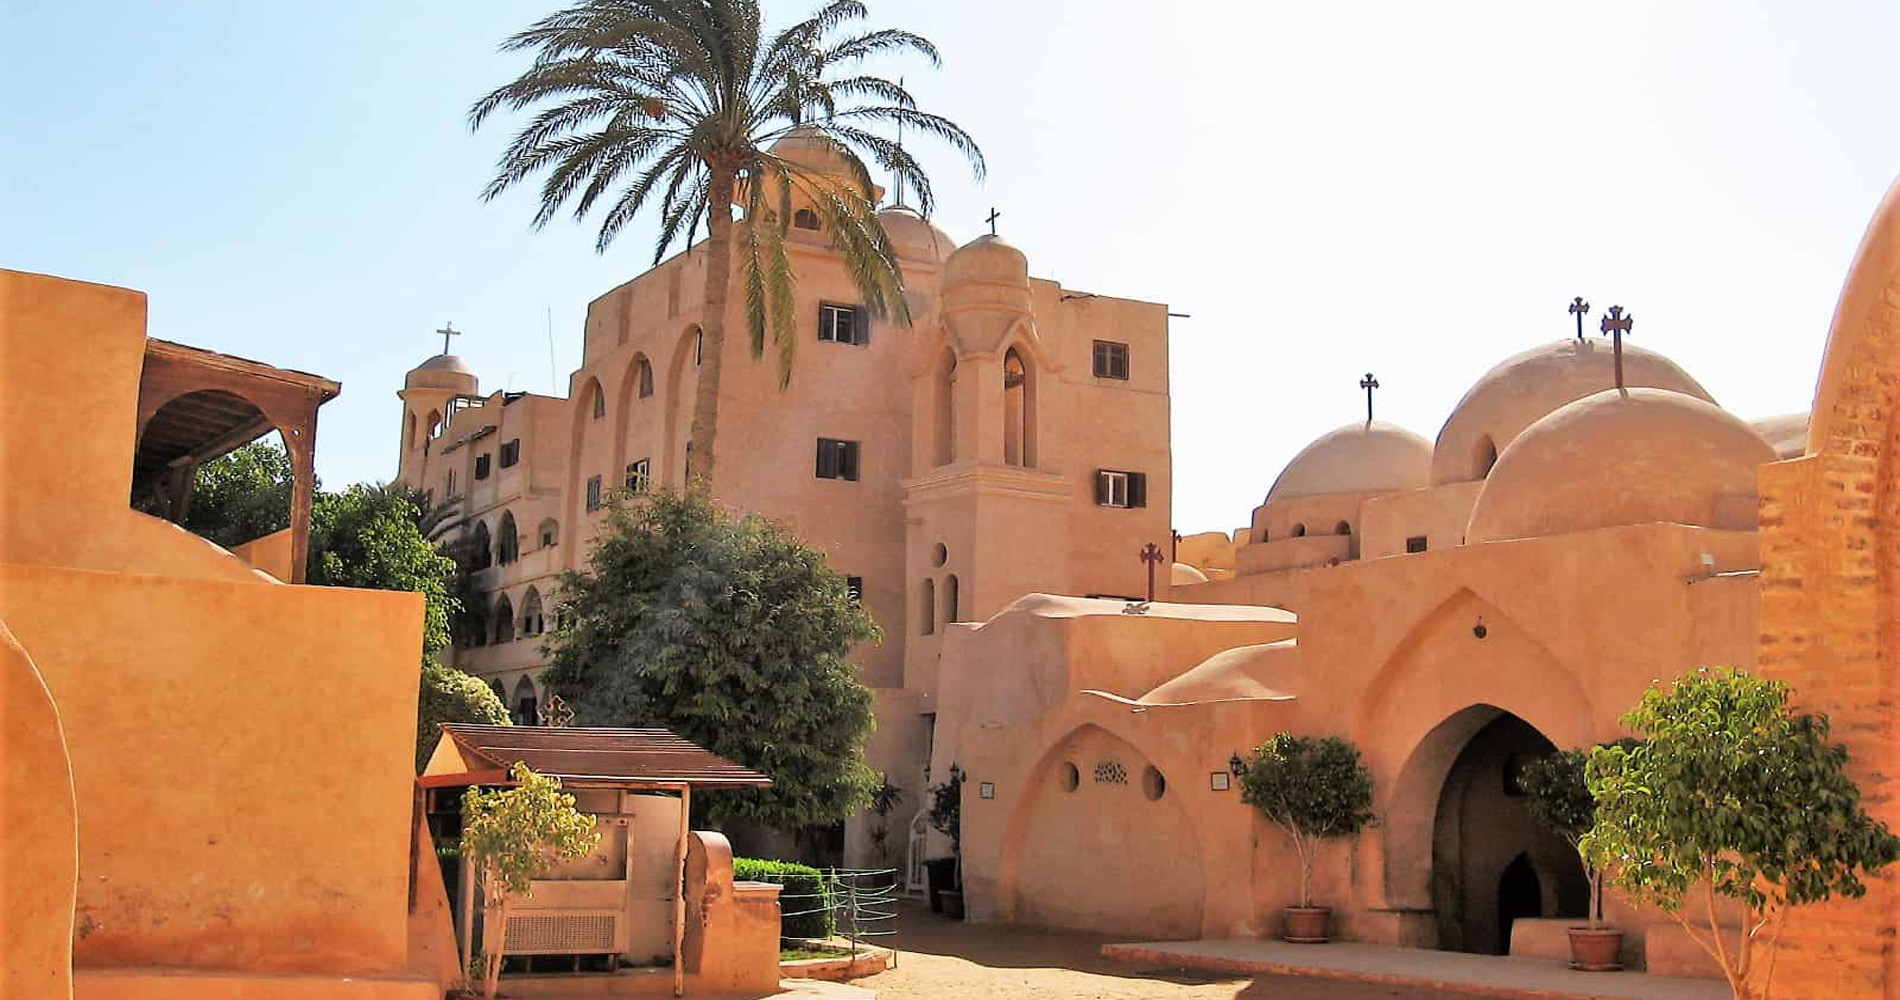 Day tour to monasteries of Wadi Al-Natroun 